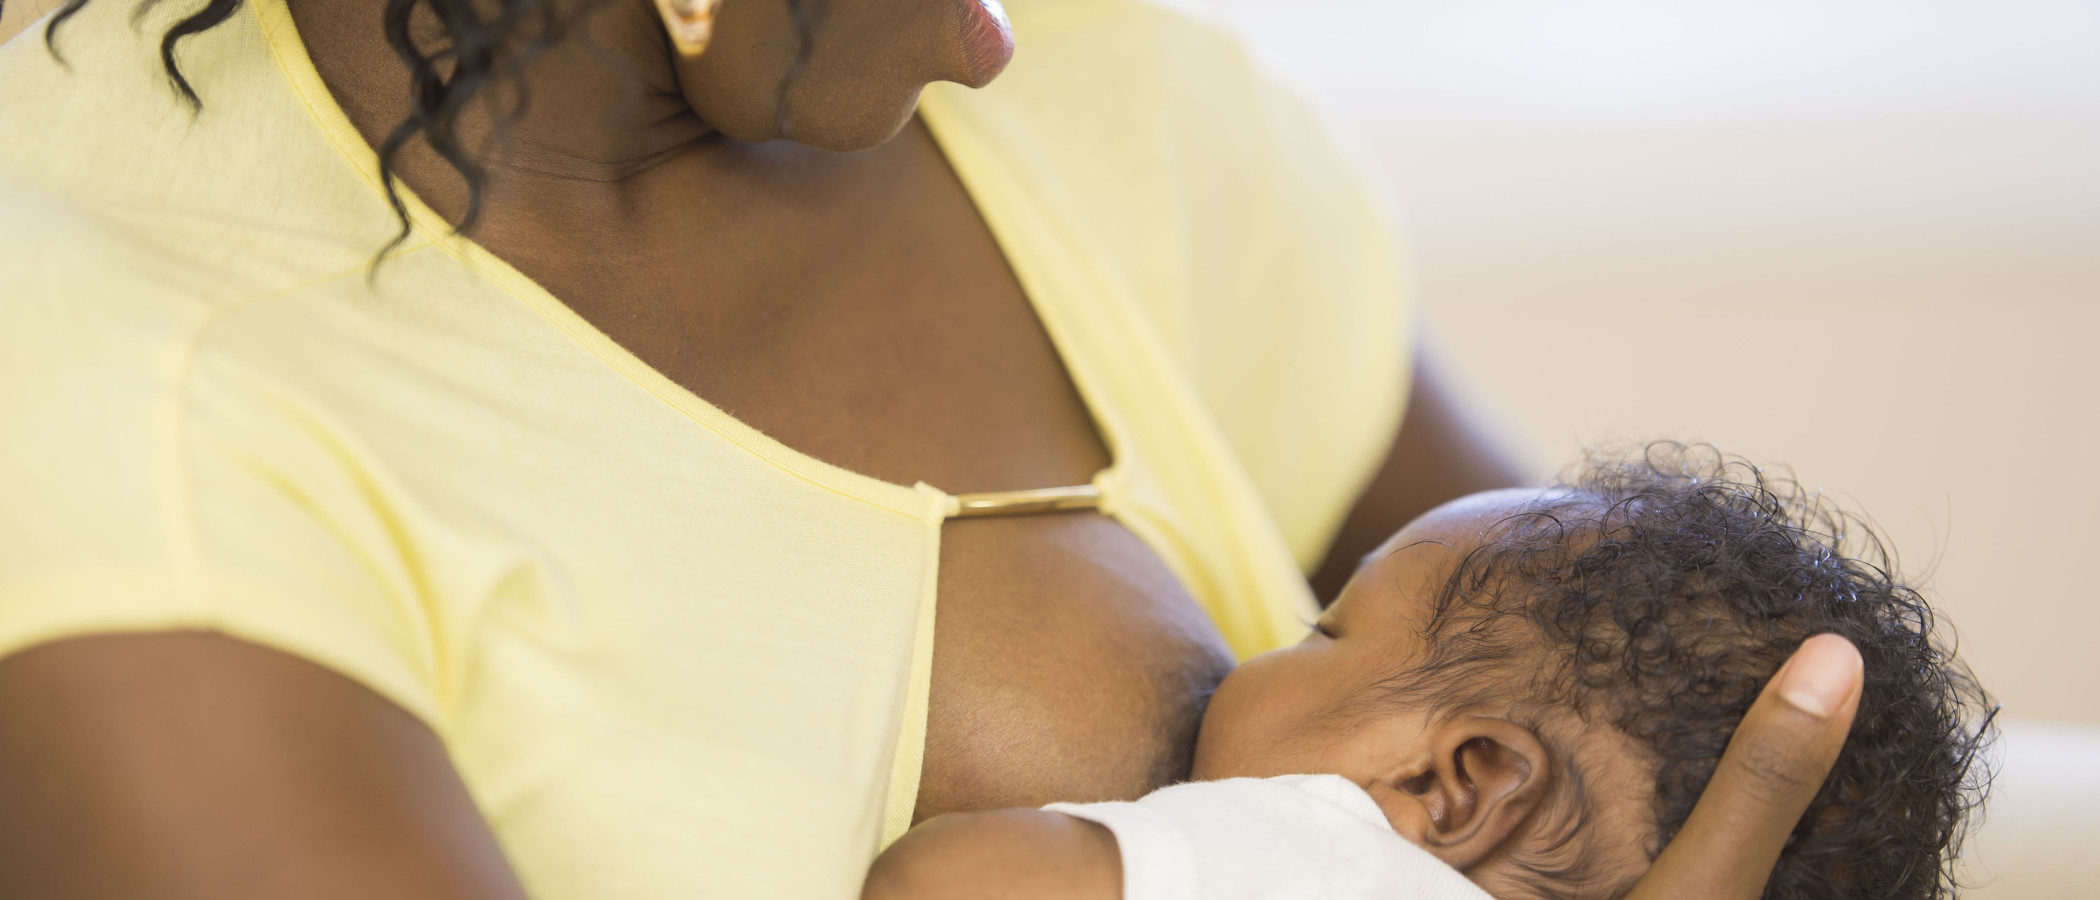 La lactancia materna a demanda o cómo conseguir una lactancia exitosa